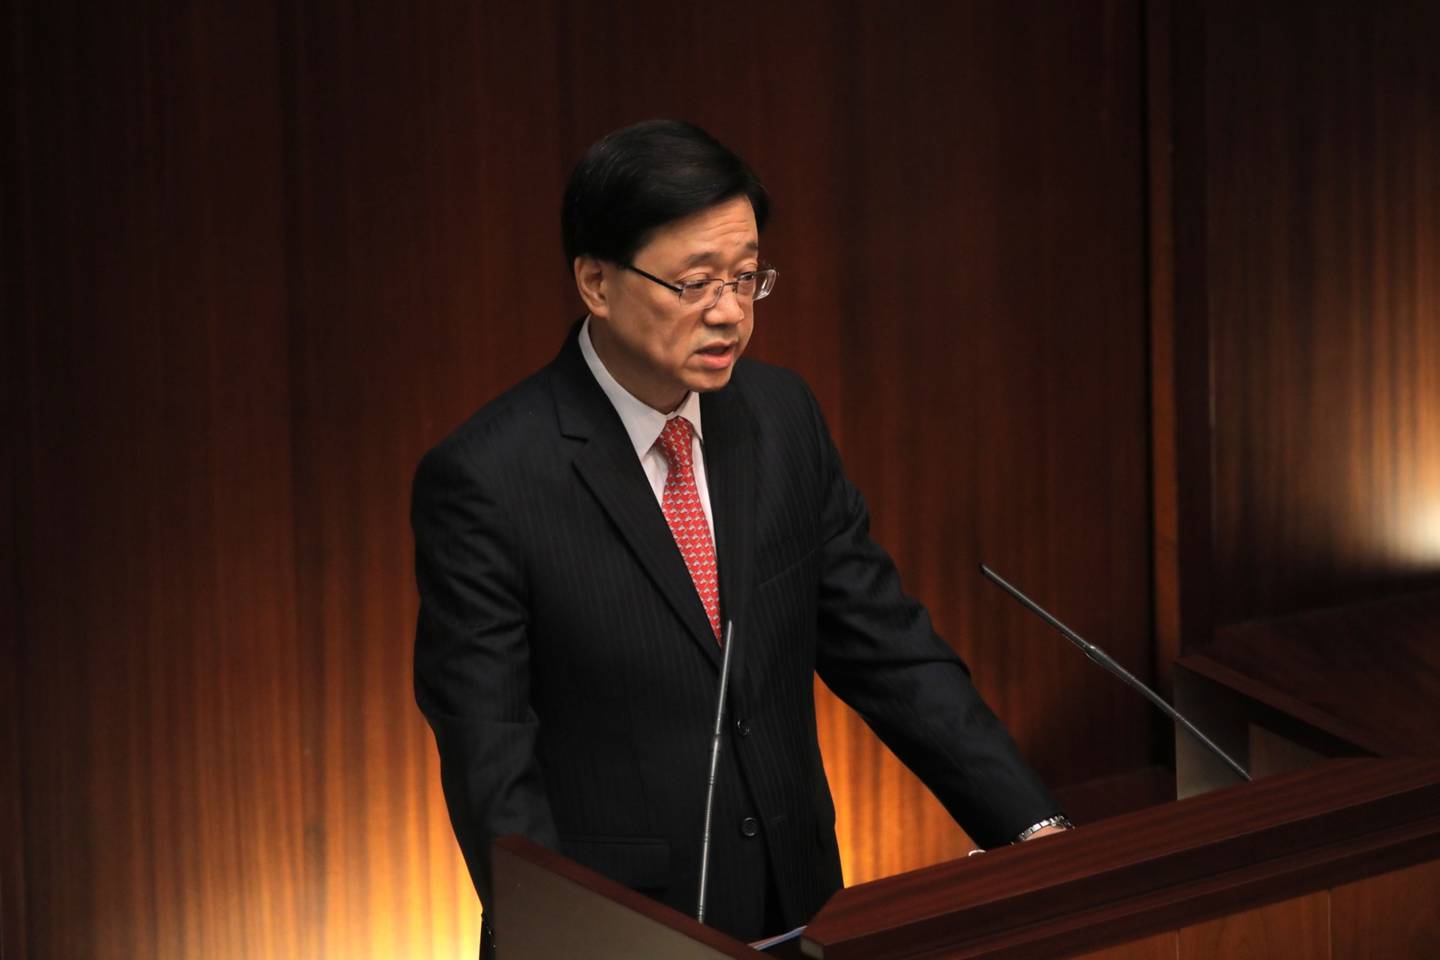 John Lee, Jefe del Ejecutivo de Hong Kong, pronuncia un discurso políticodfd